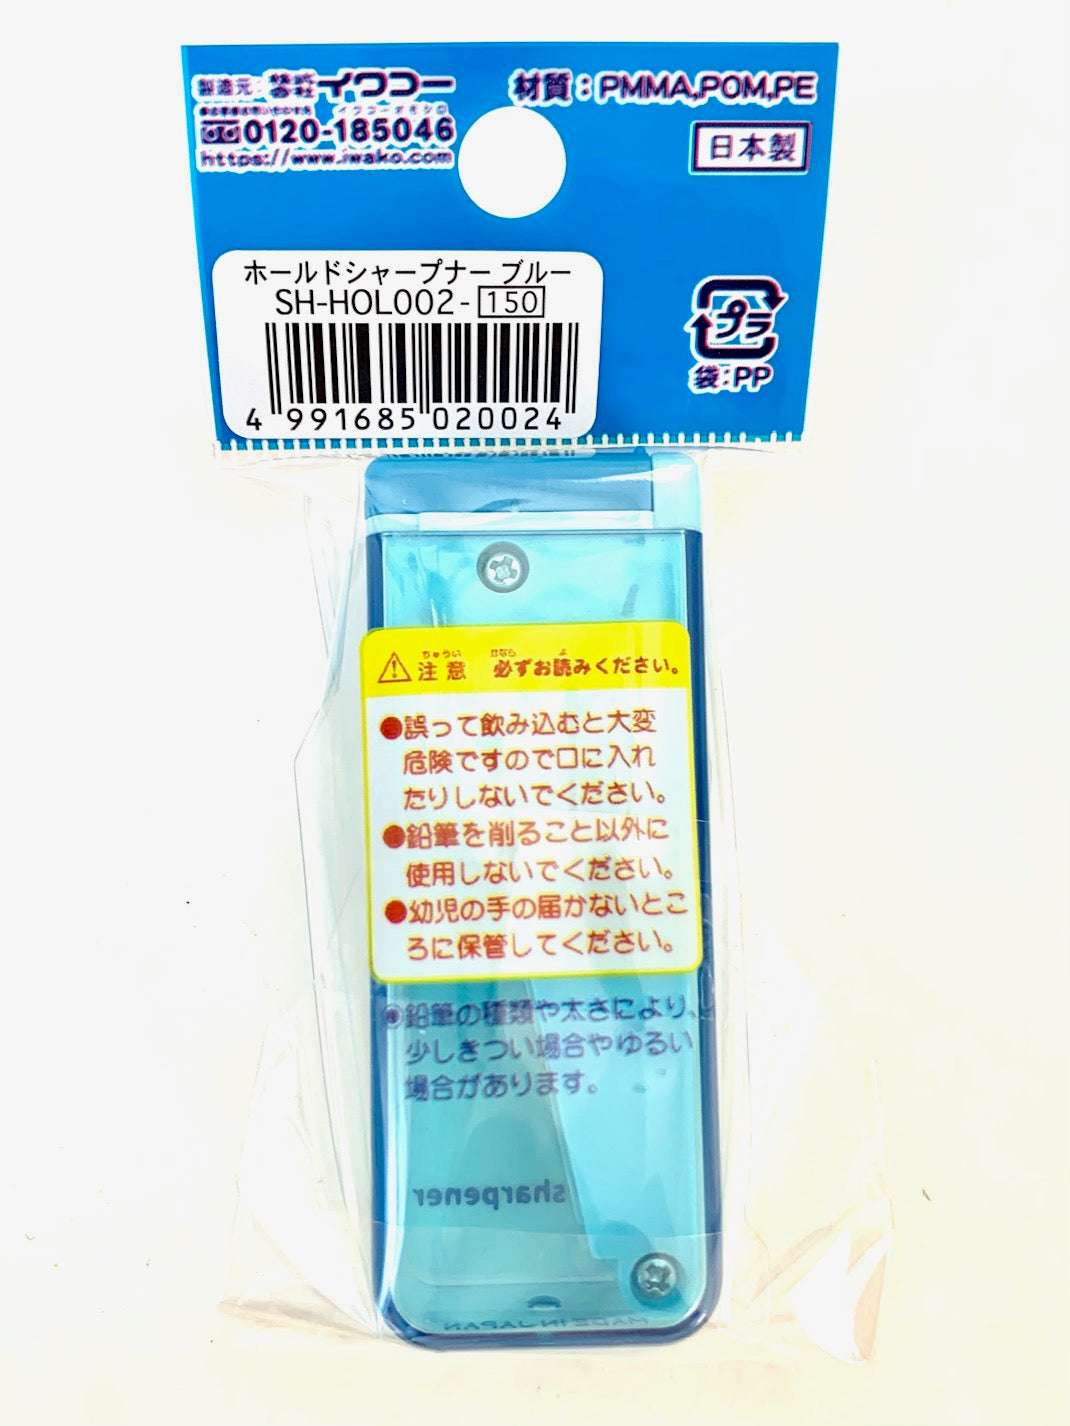 33333 IWAKO Pencil Sharpener Blue-6